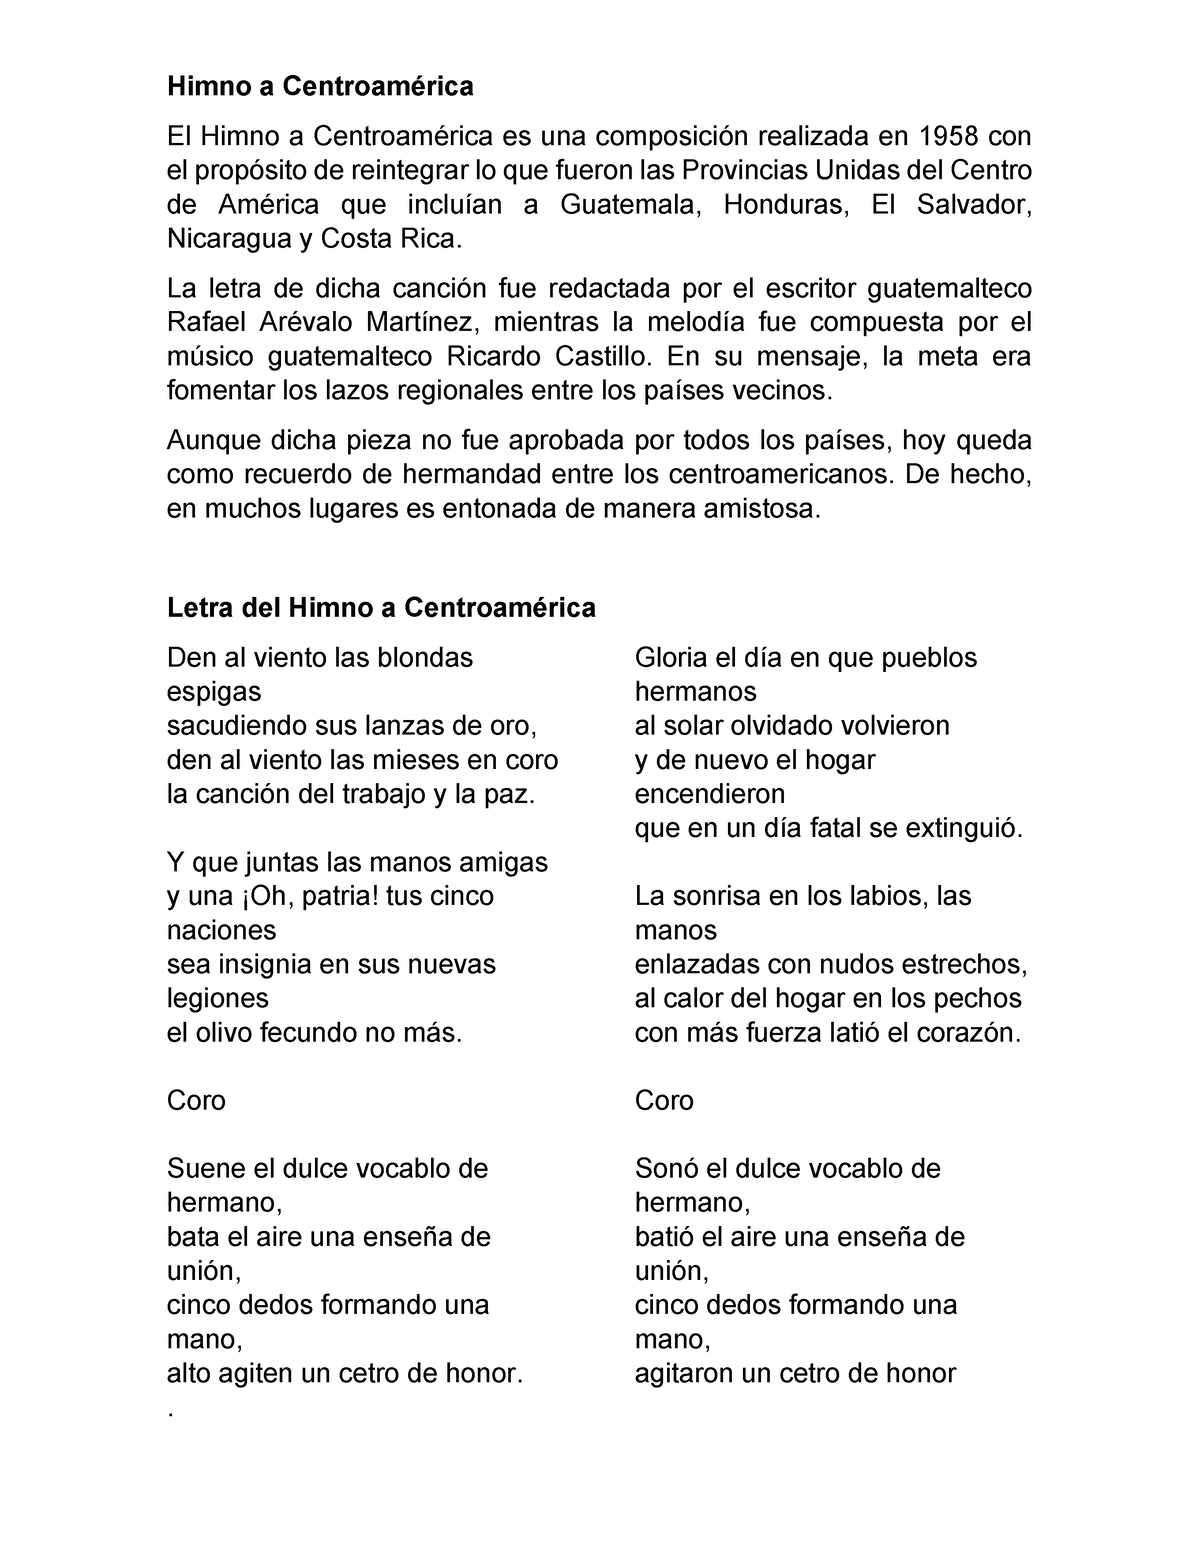 Himno a Centroamérica - La letra de dicha canción fue redactada por el  escritor guatemalteco Rafael - Studocu